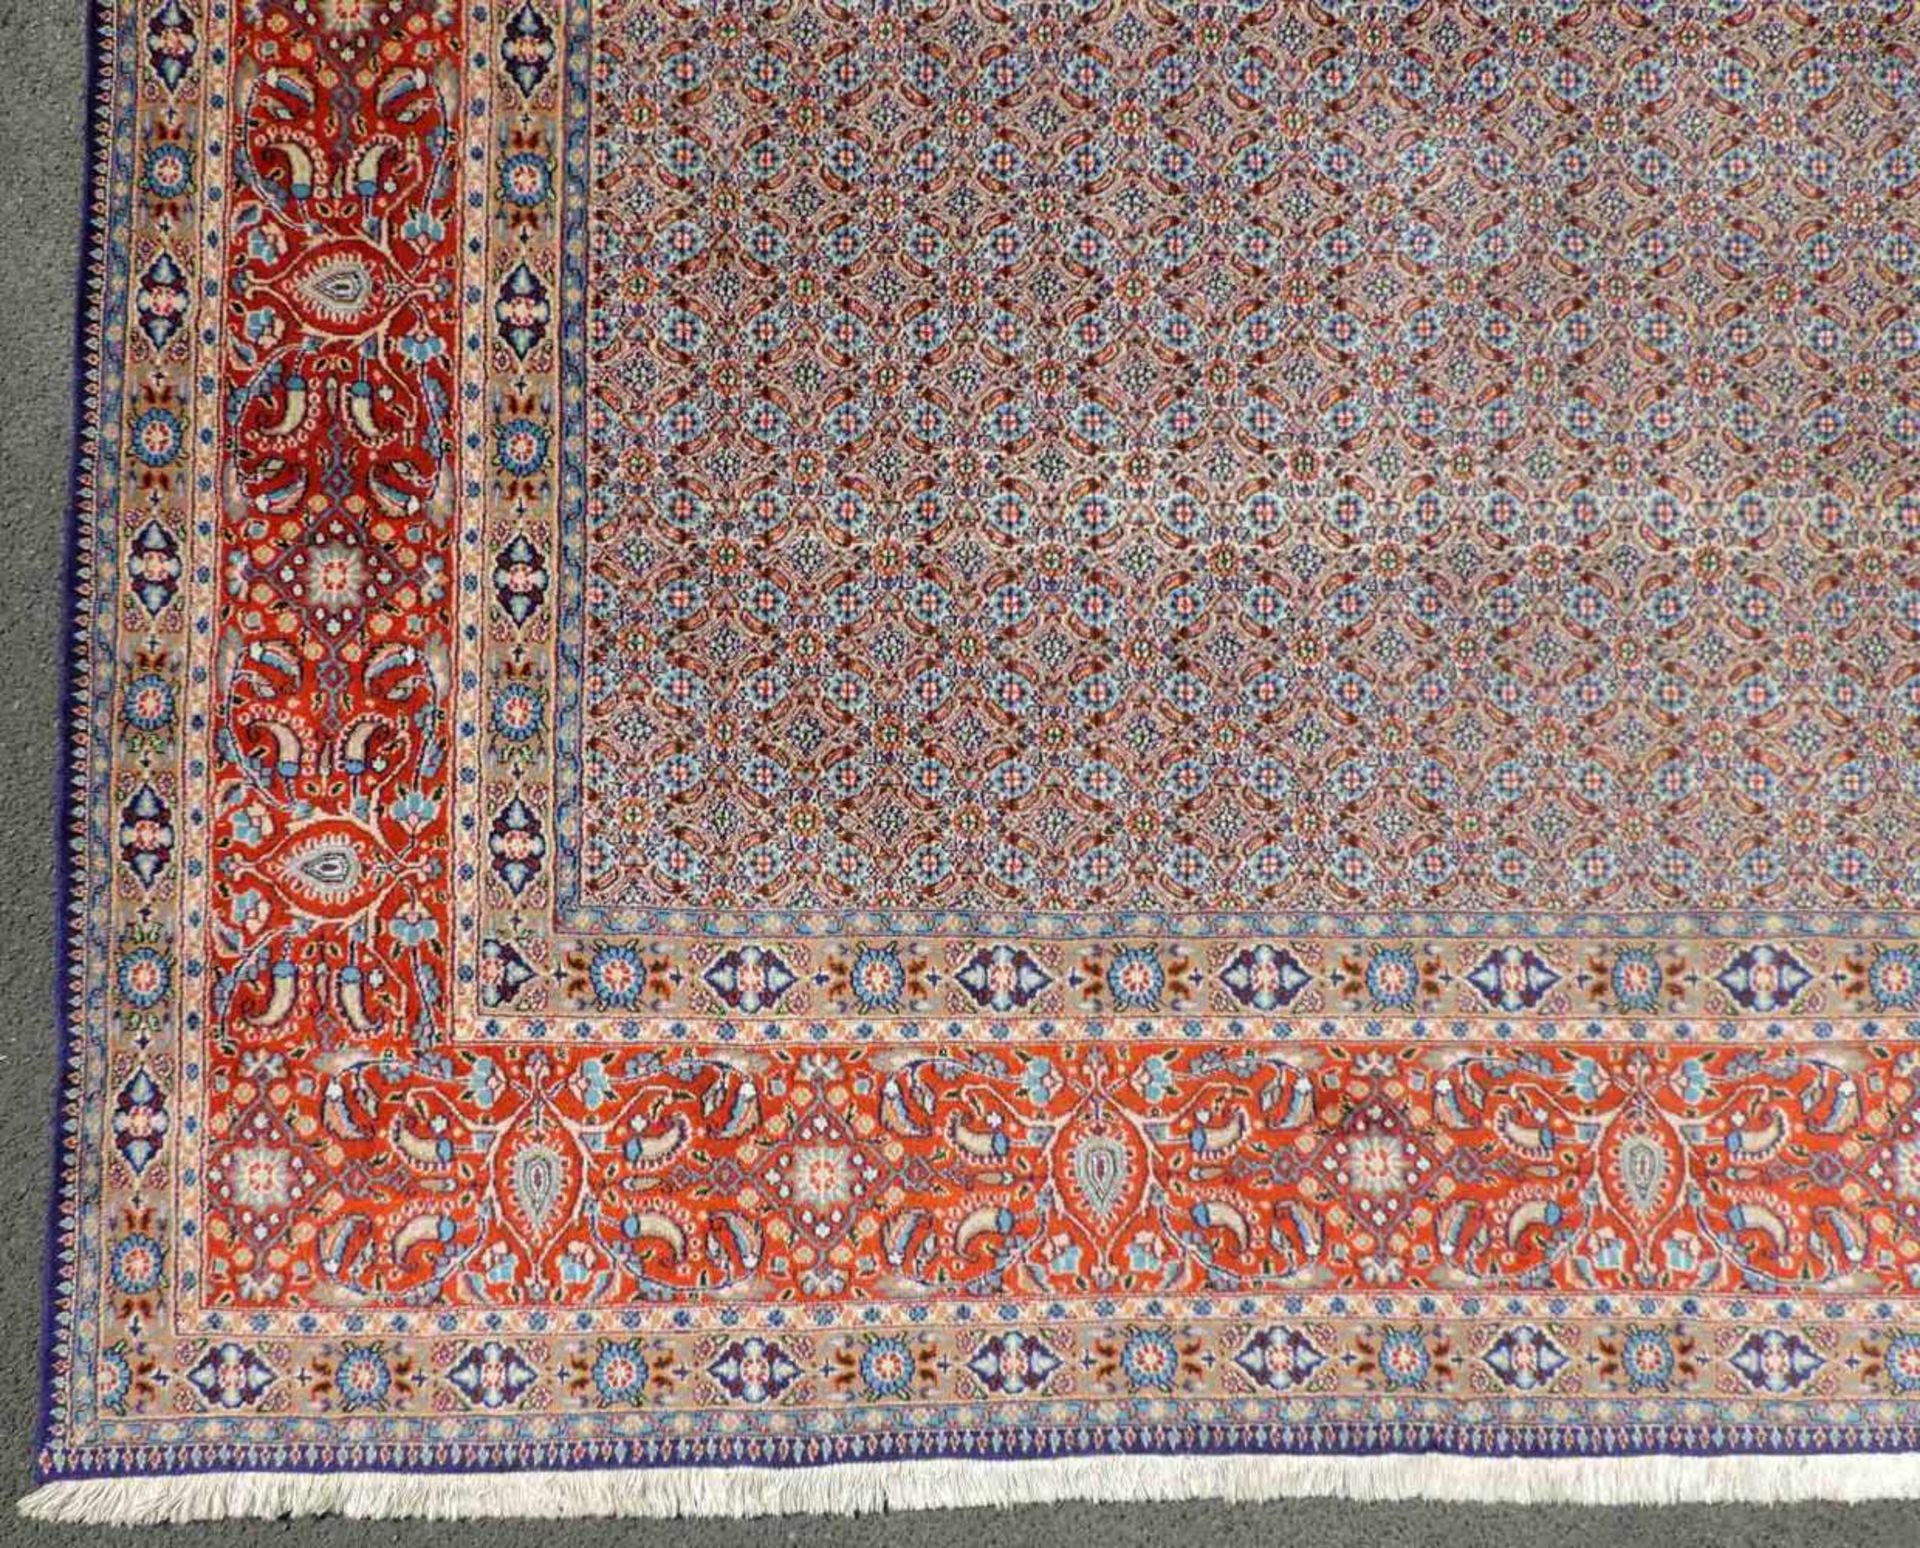 Moud Perserteppich. Iran. 406 cm x 300 cm. Handgeknüpft. Wolle auf Baumwolle. Zustand siehe Fotos. - Image 3 of 10